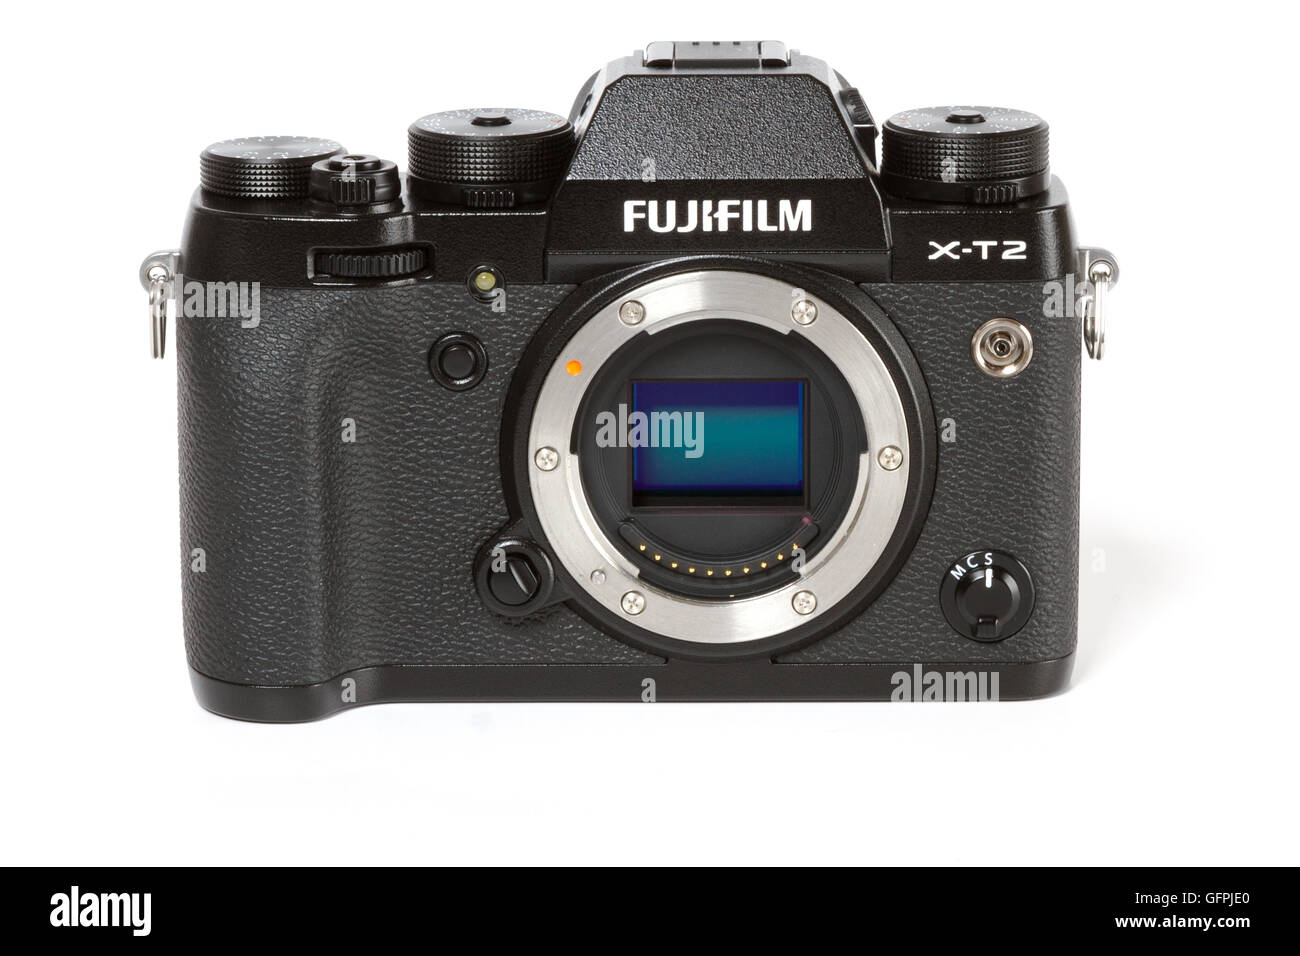 FUJIFILM X-T2, 24 mégapixels, vidéo 4K mirrorless camerawith capteur visible, de l'avant sur fond blanc Banque D'Images